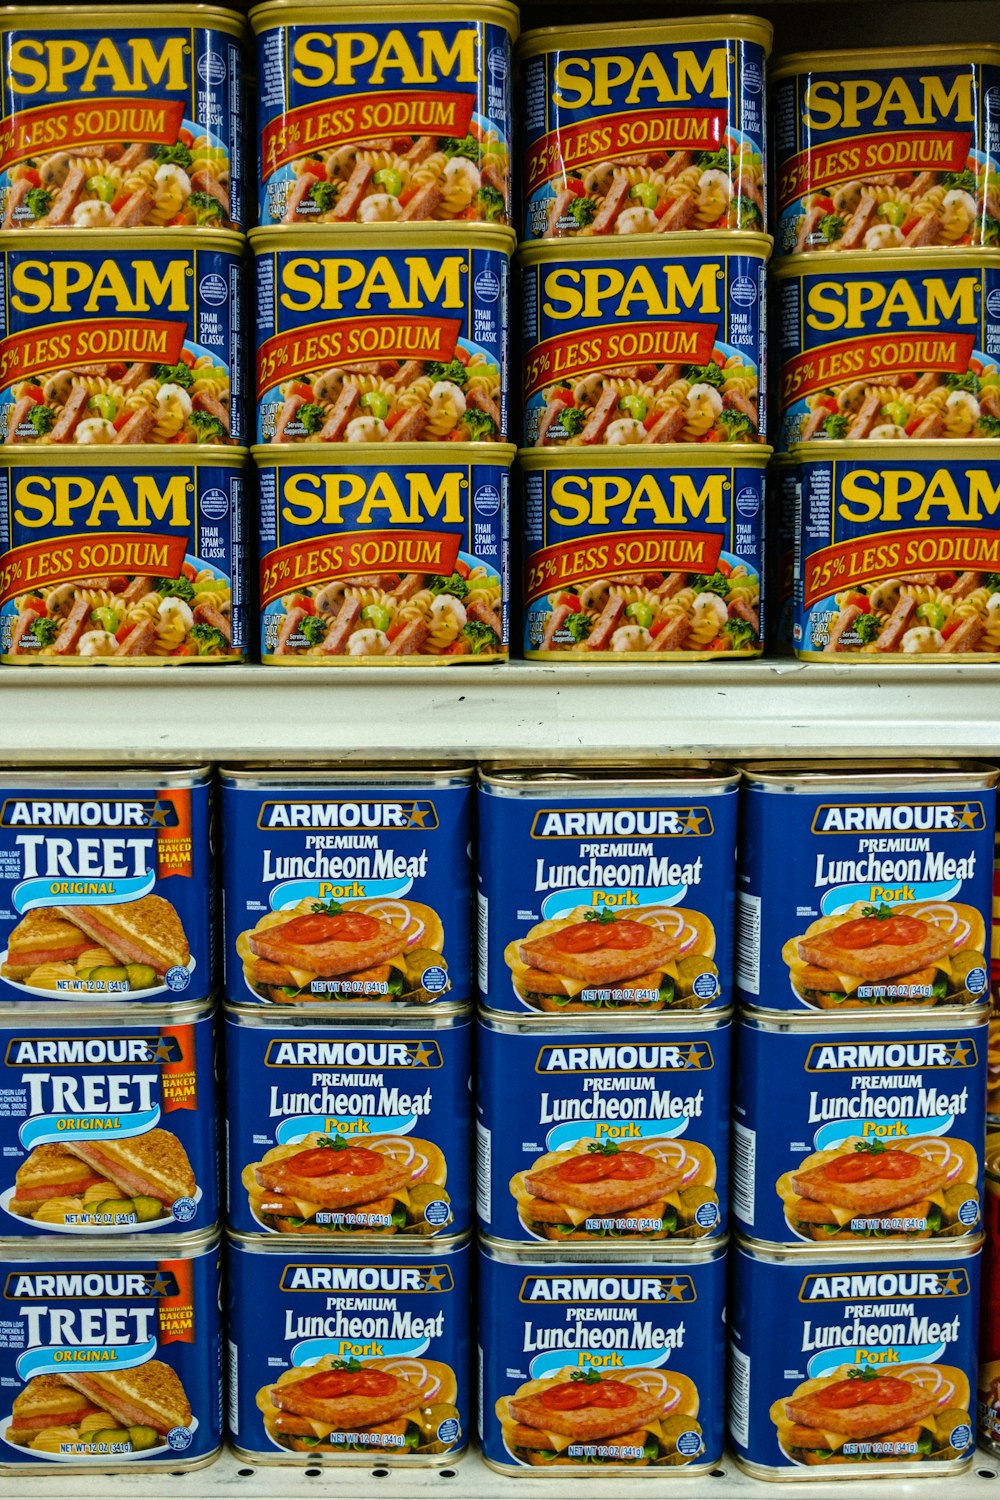 latas de spam são empilhadas em uma prateleira